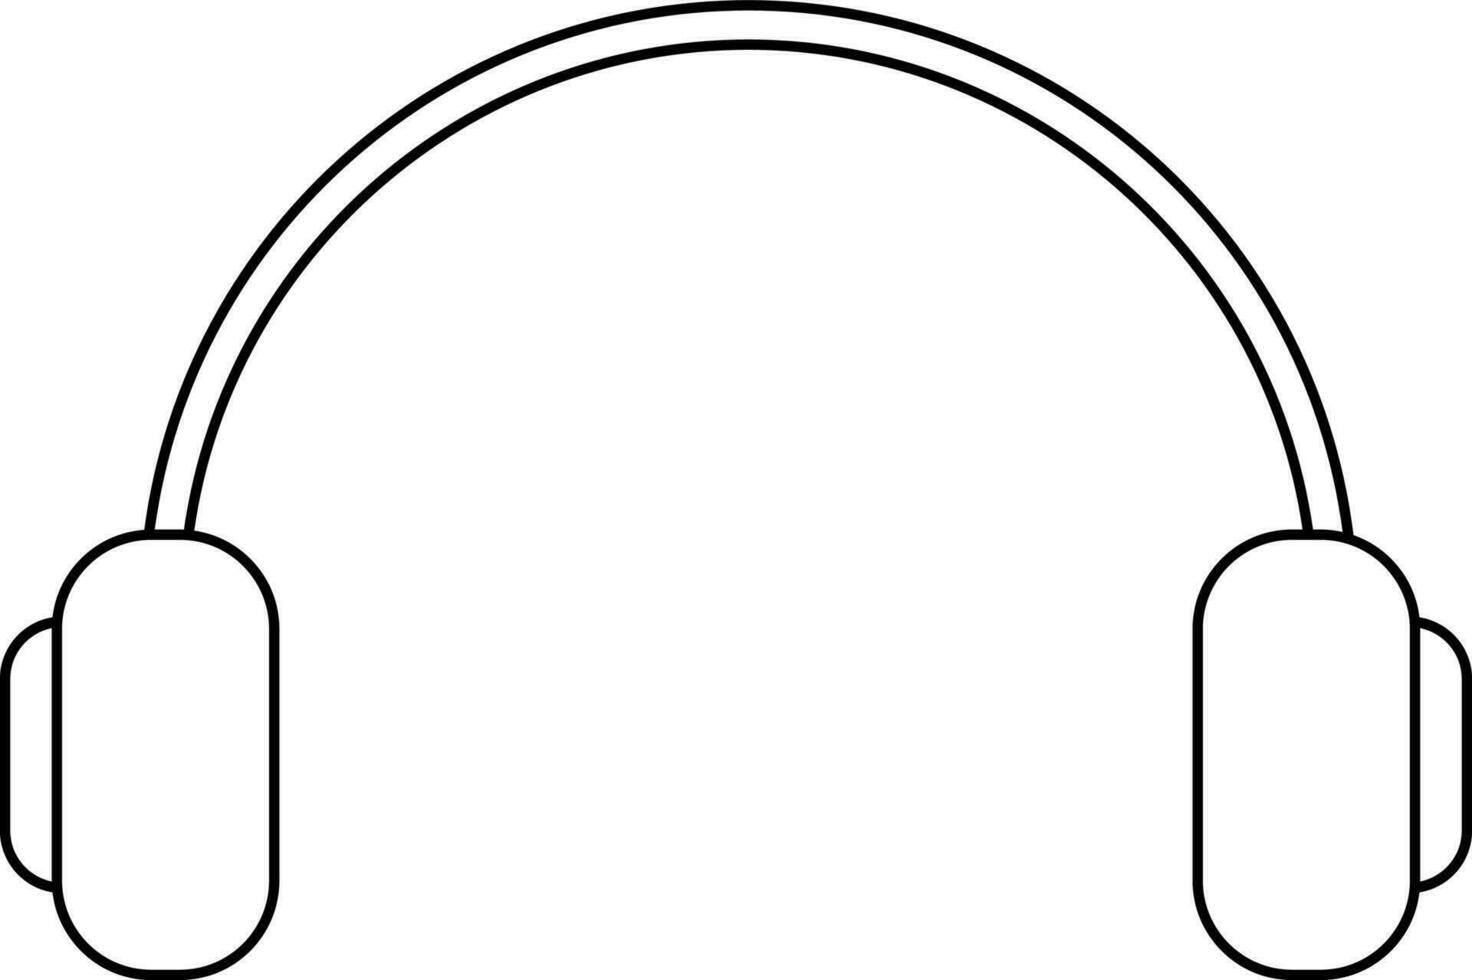 Line art headphone on white background. vector